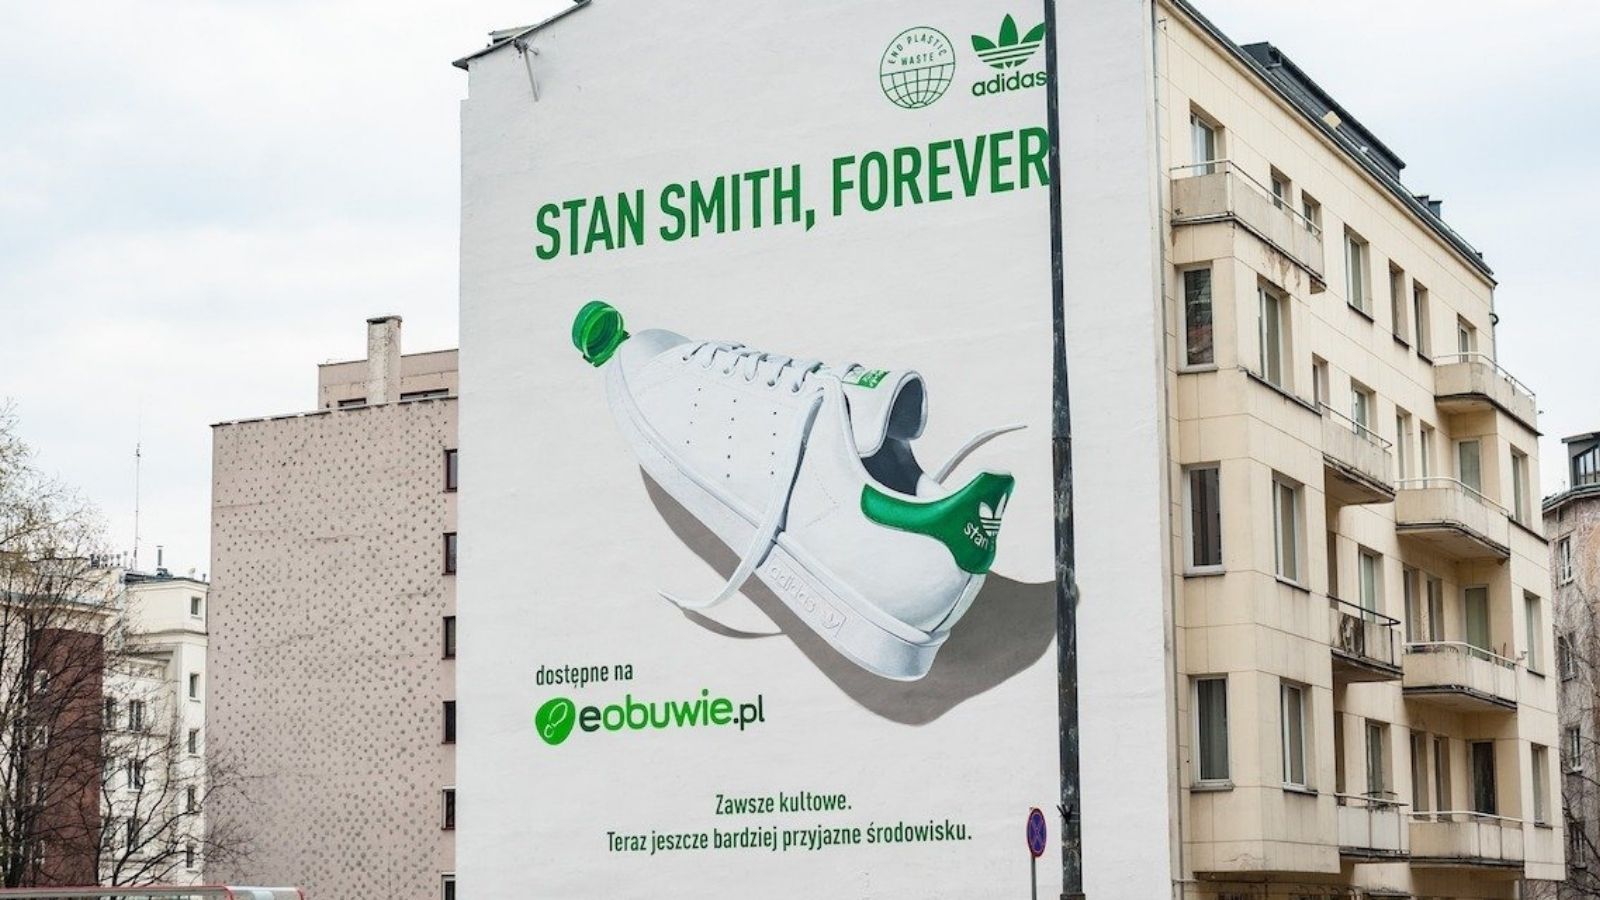 Adidas i eobuwie.pl z muralem oczyszczającym powietrze w centrum stolicy eobuwie.pl mediarun adidas eobuwie